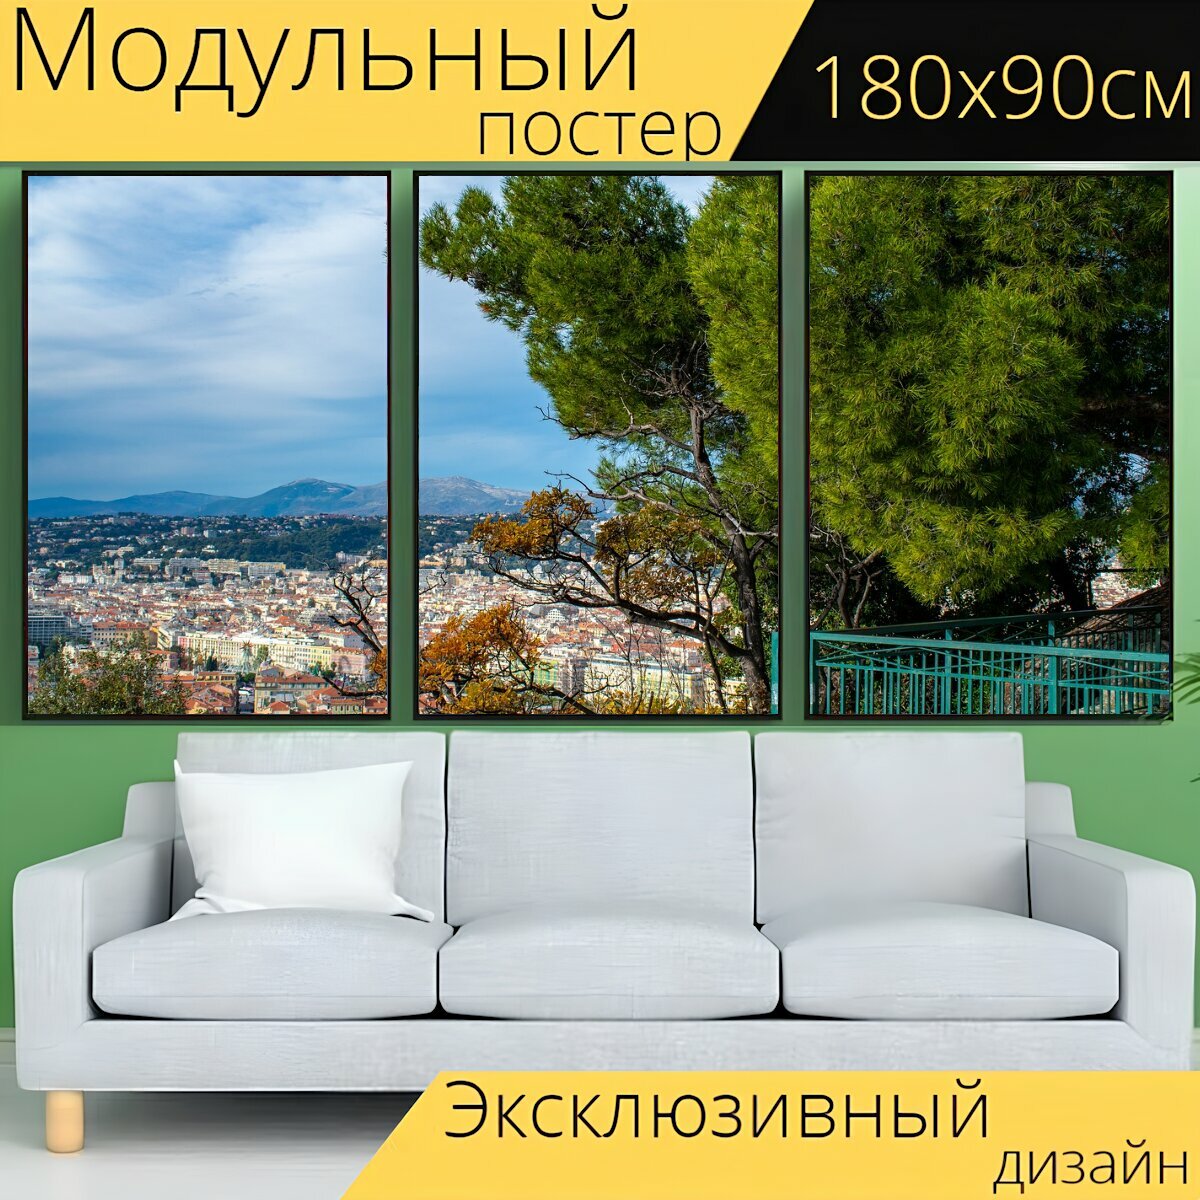 Модульный постер "Горы, деревья, город" 180 x 90 см. для интерьера